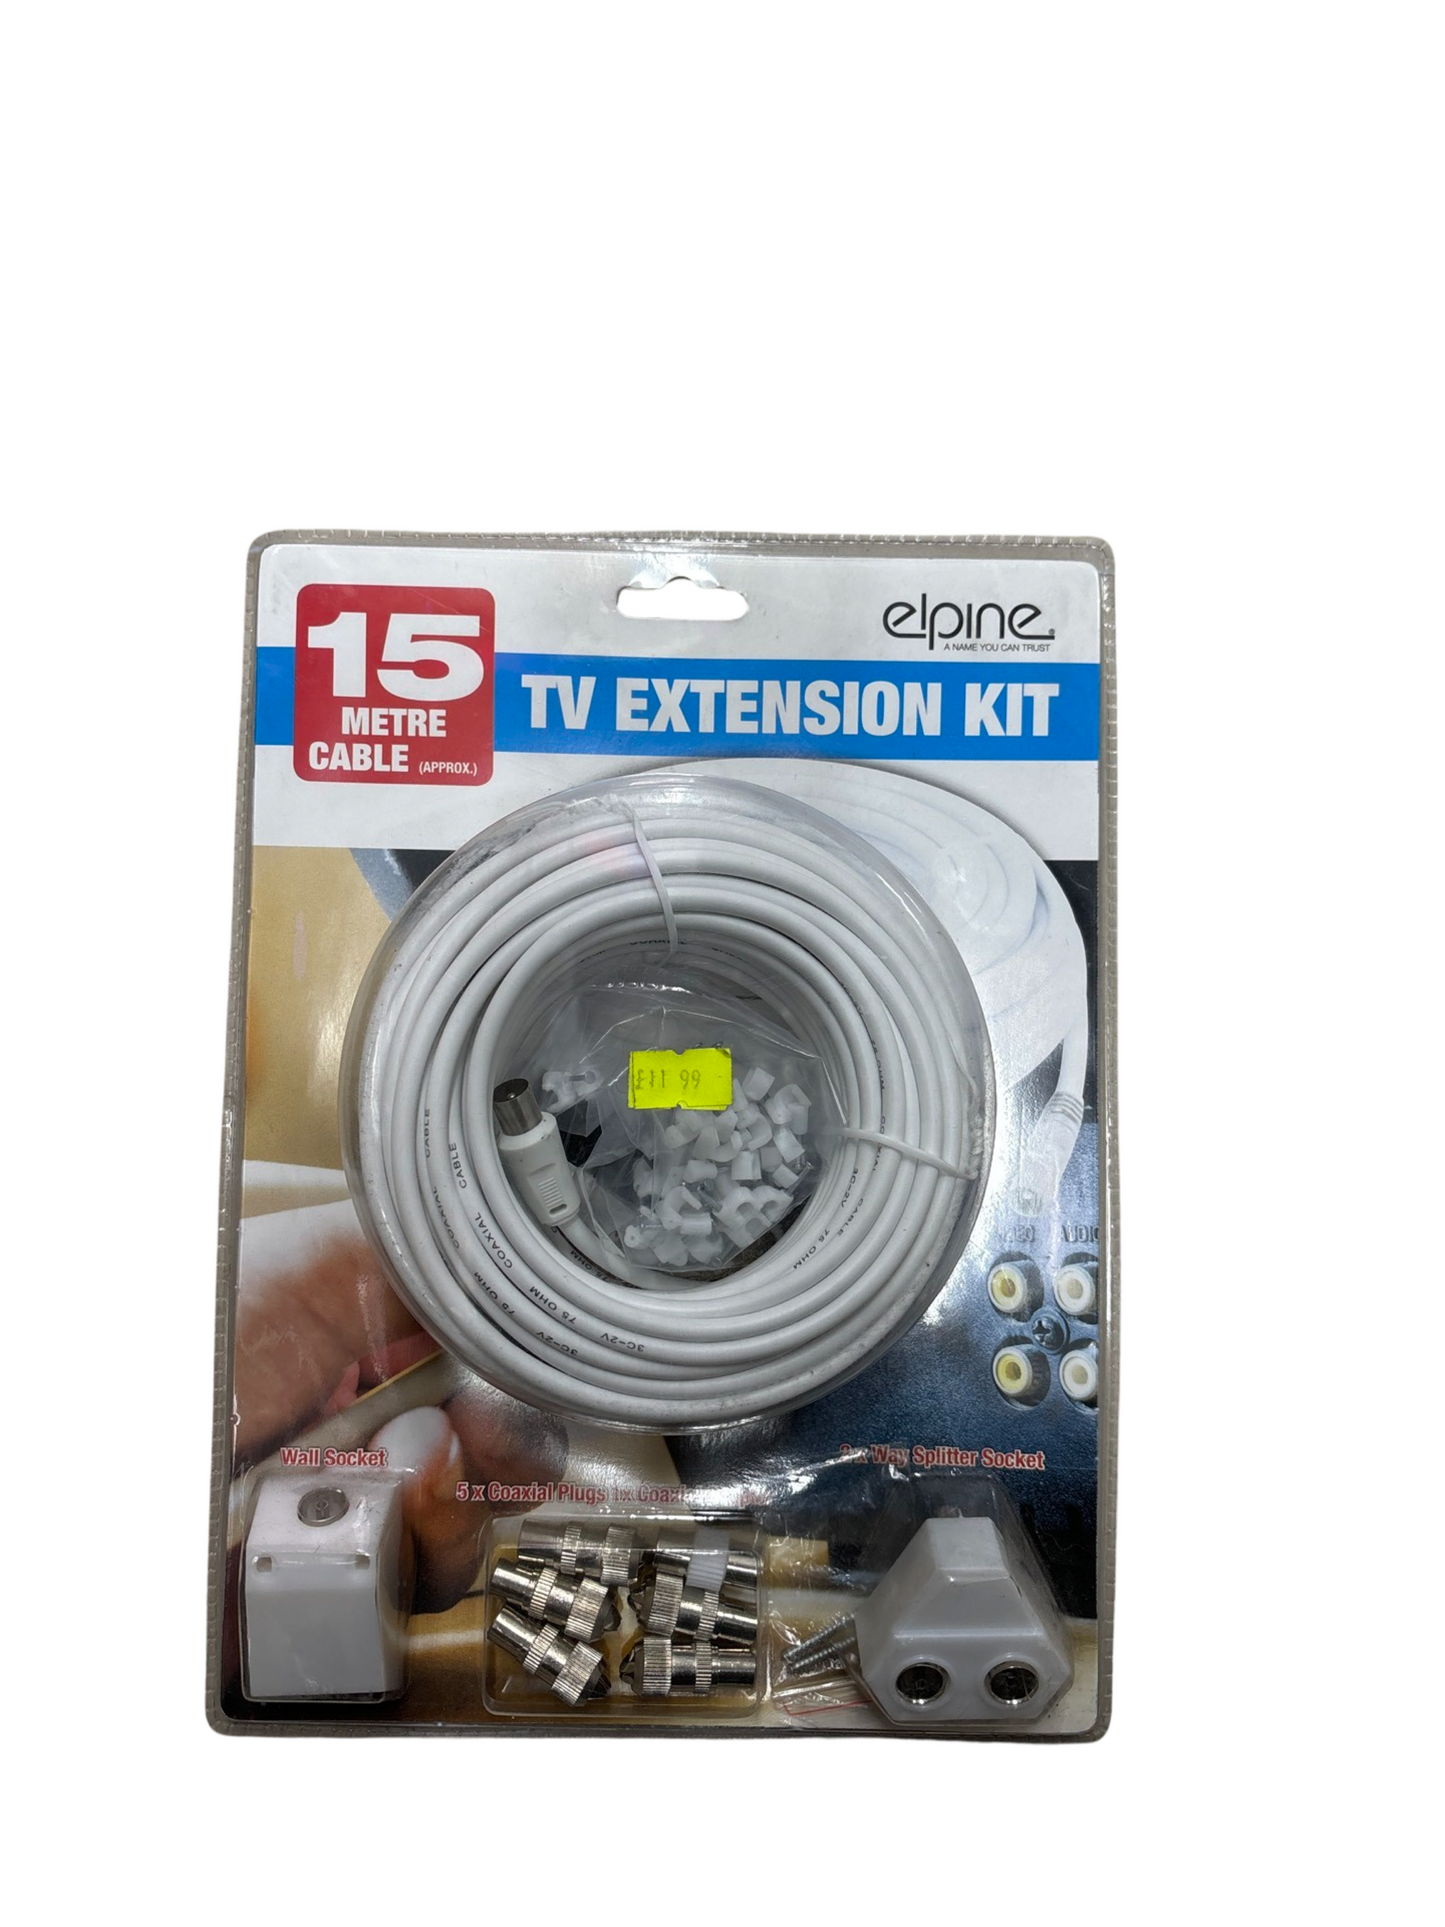 TV extension kit